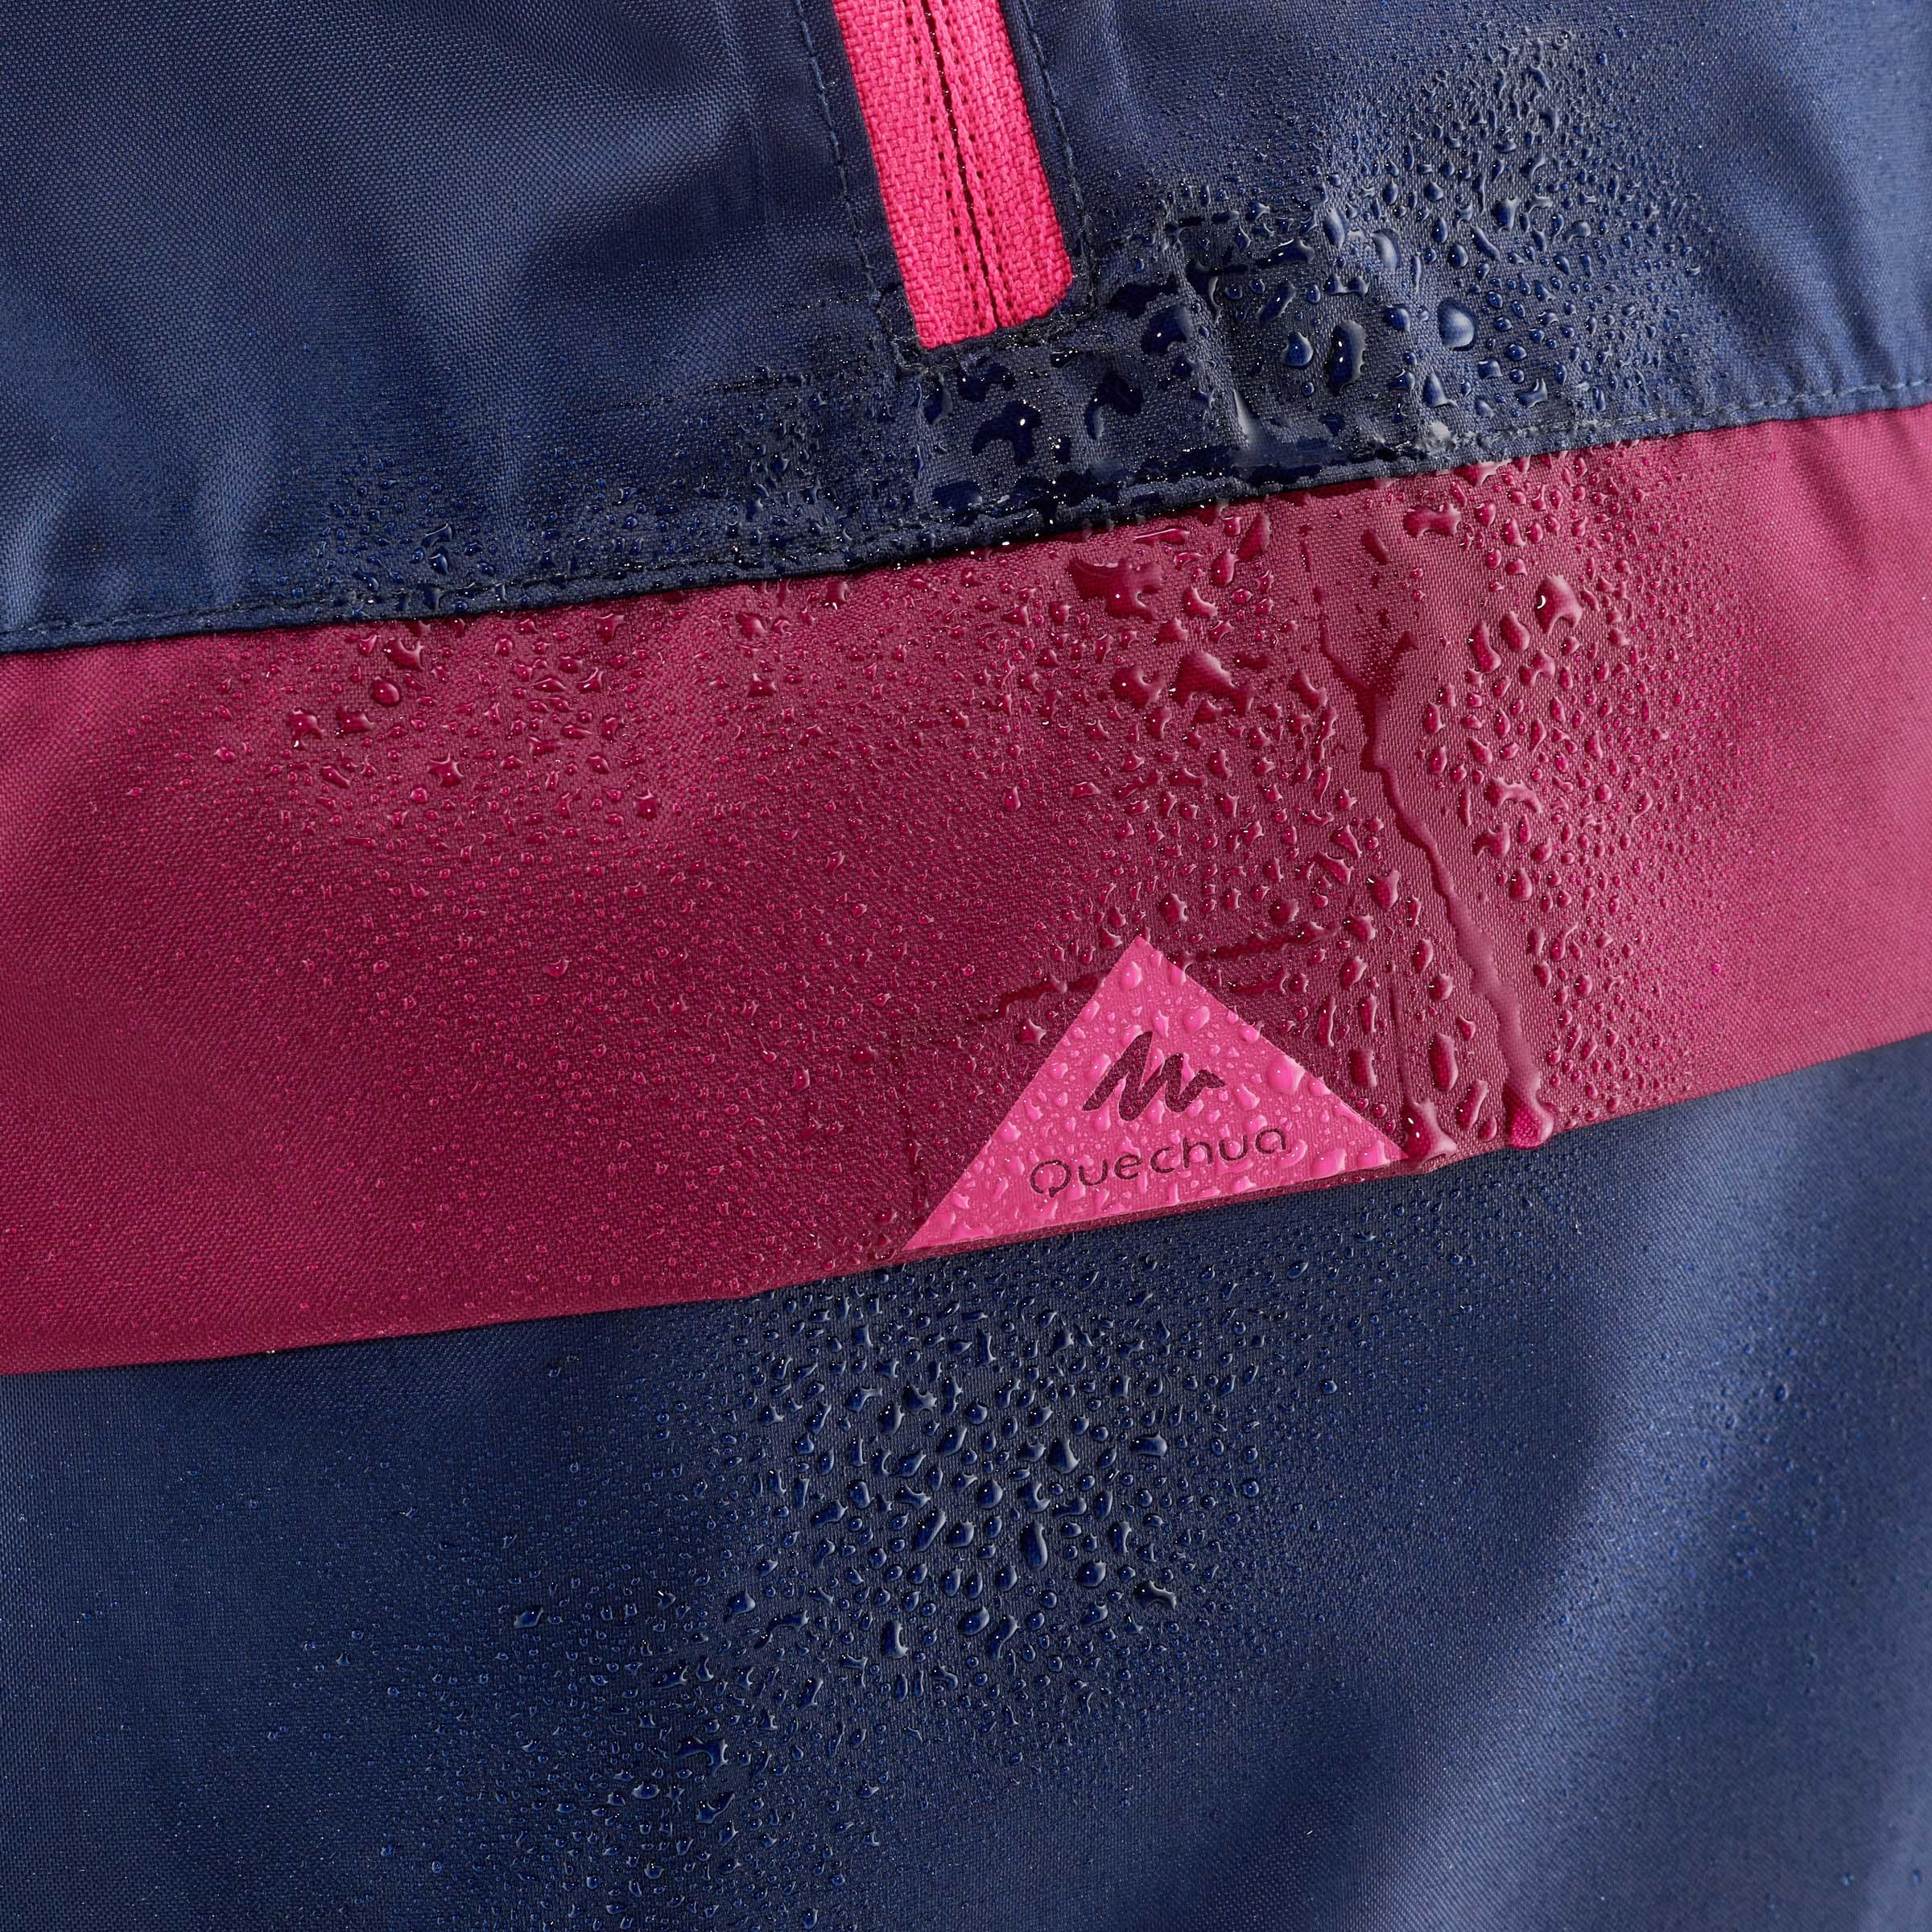 Manteau de randonnée imperméable enfant – MH 100 bleu/rose - QUECHUA